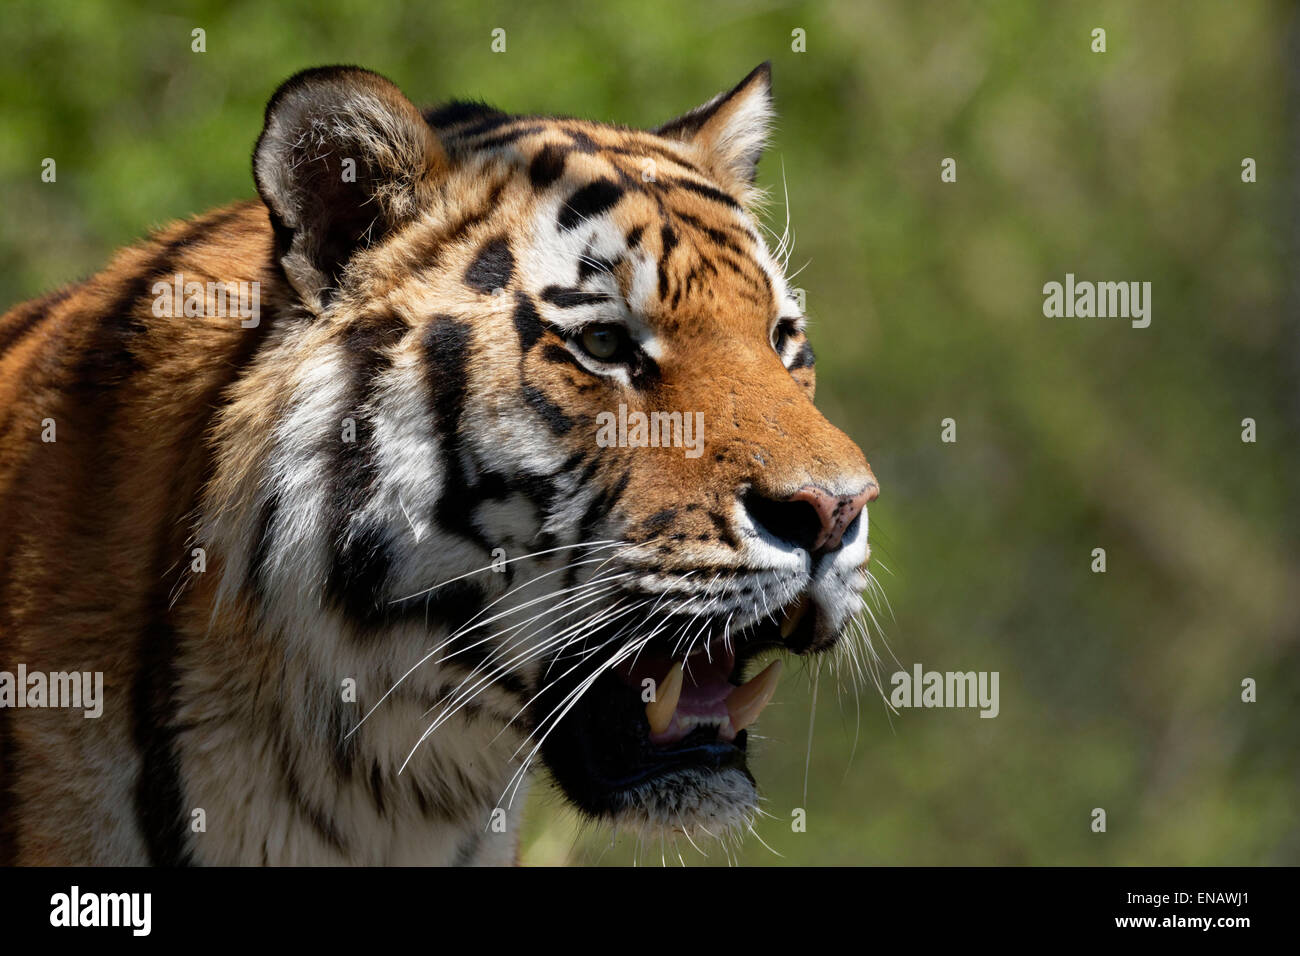 El retrato de un tigre indio (Panthera tigris), Foto de stock